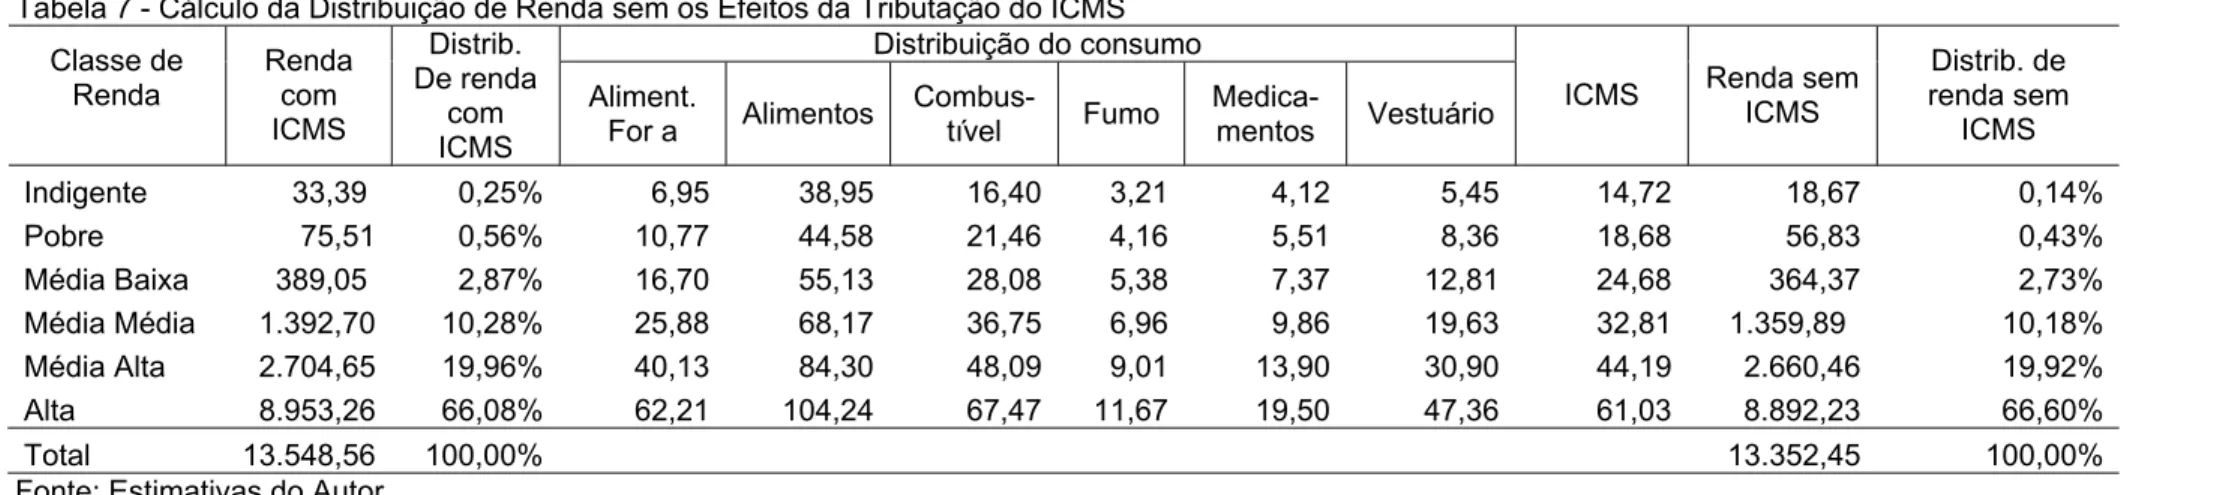 Tabela 7 - Cálculo da Distribuição de Renda sem os Efeitos da Tributação do ICMS  Distribuição do consumo  Classe de  Renda  Renda com  ICMS  Distrib